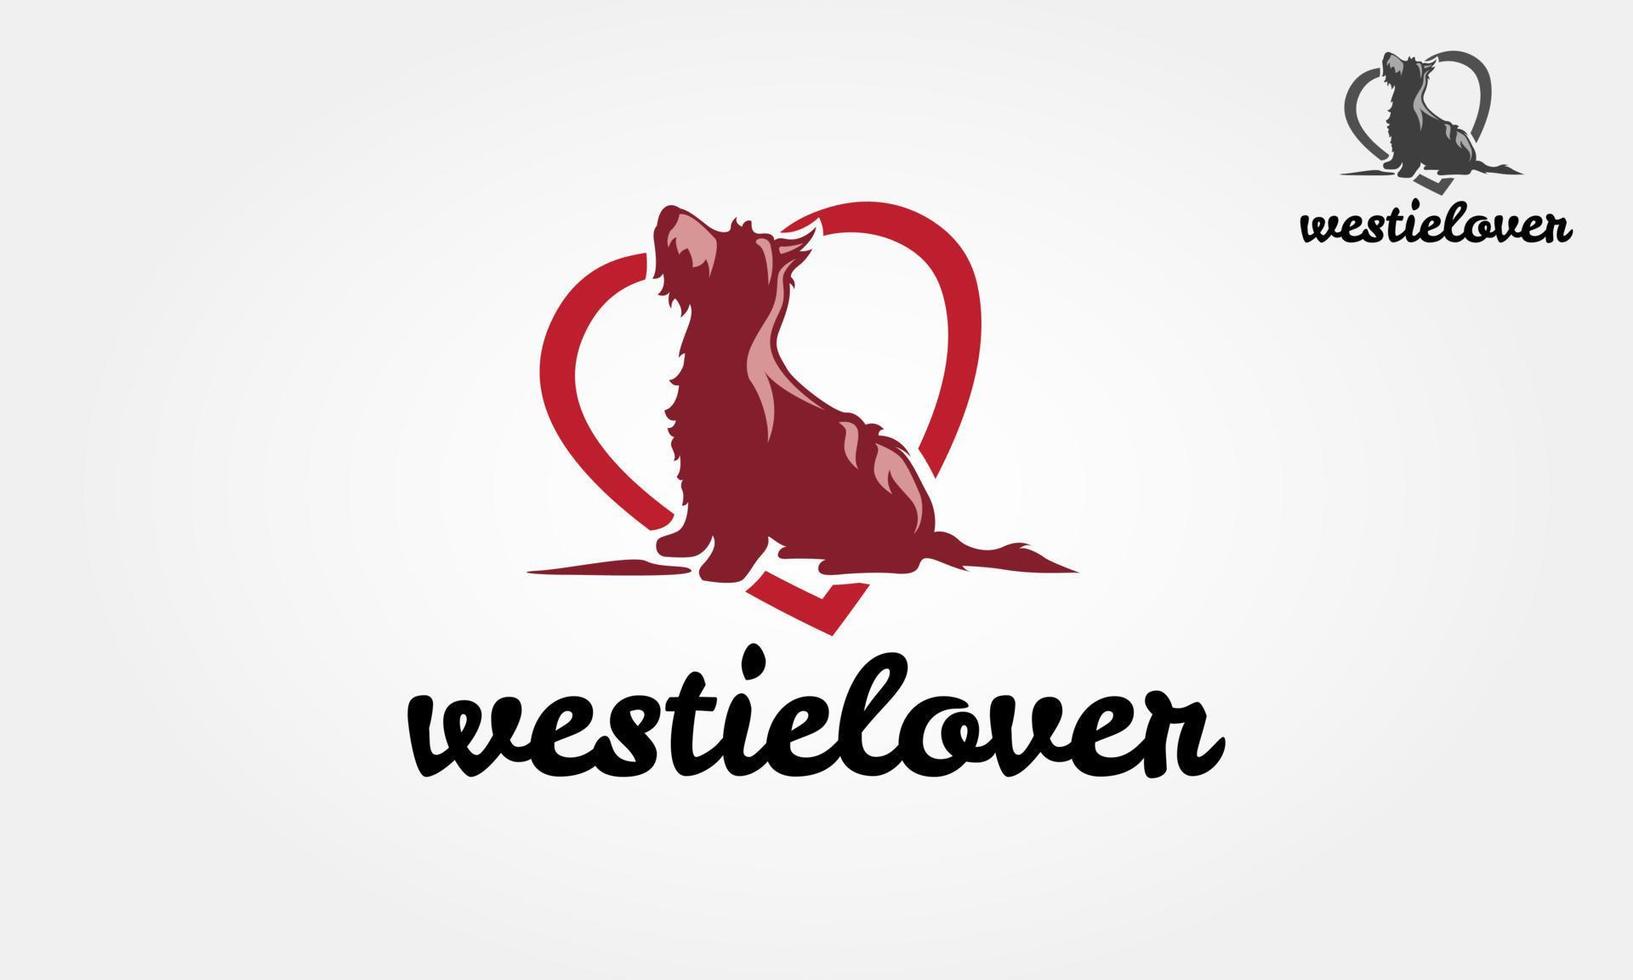 modello di logo di vettore dell'amante di westie. sagoma vettoriale di un cane westie su sfondo bianco.